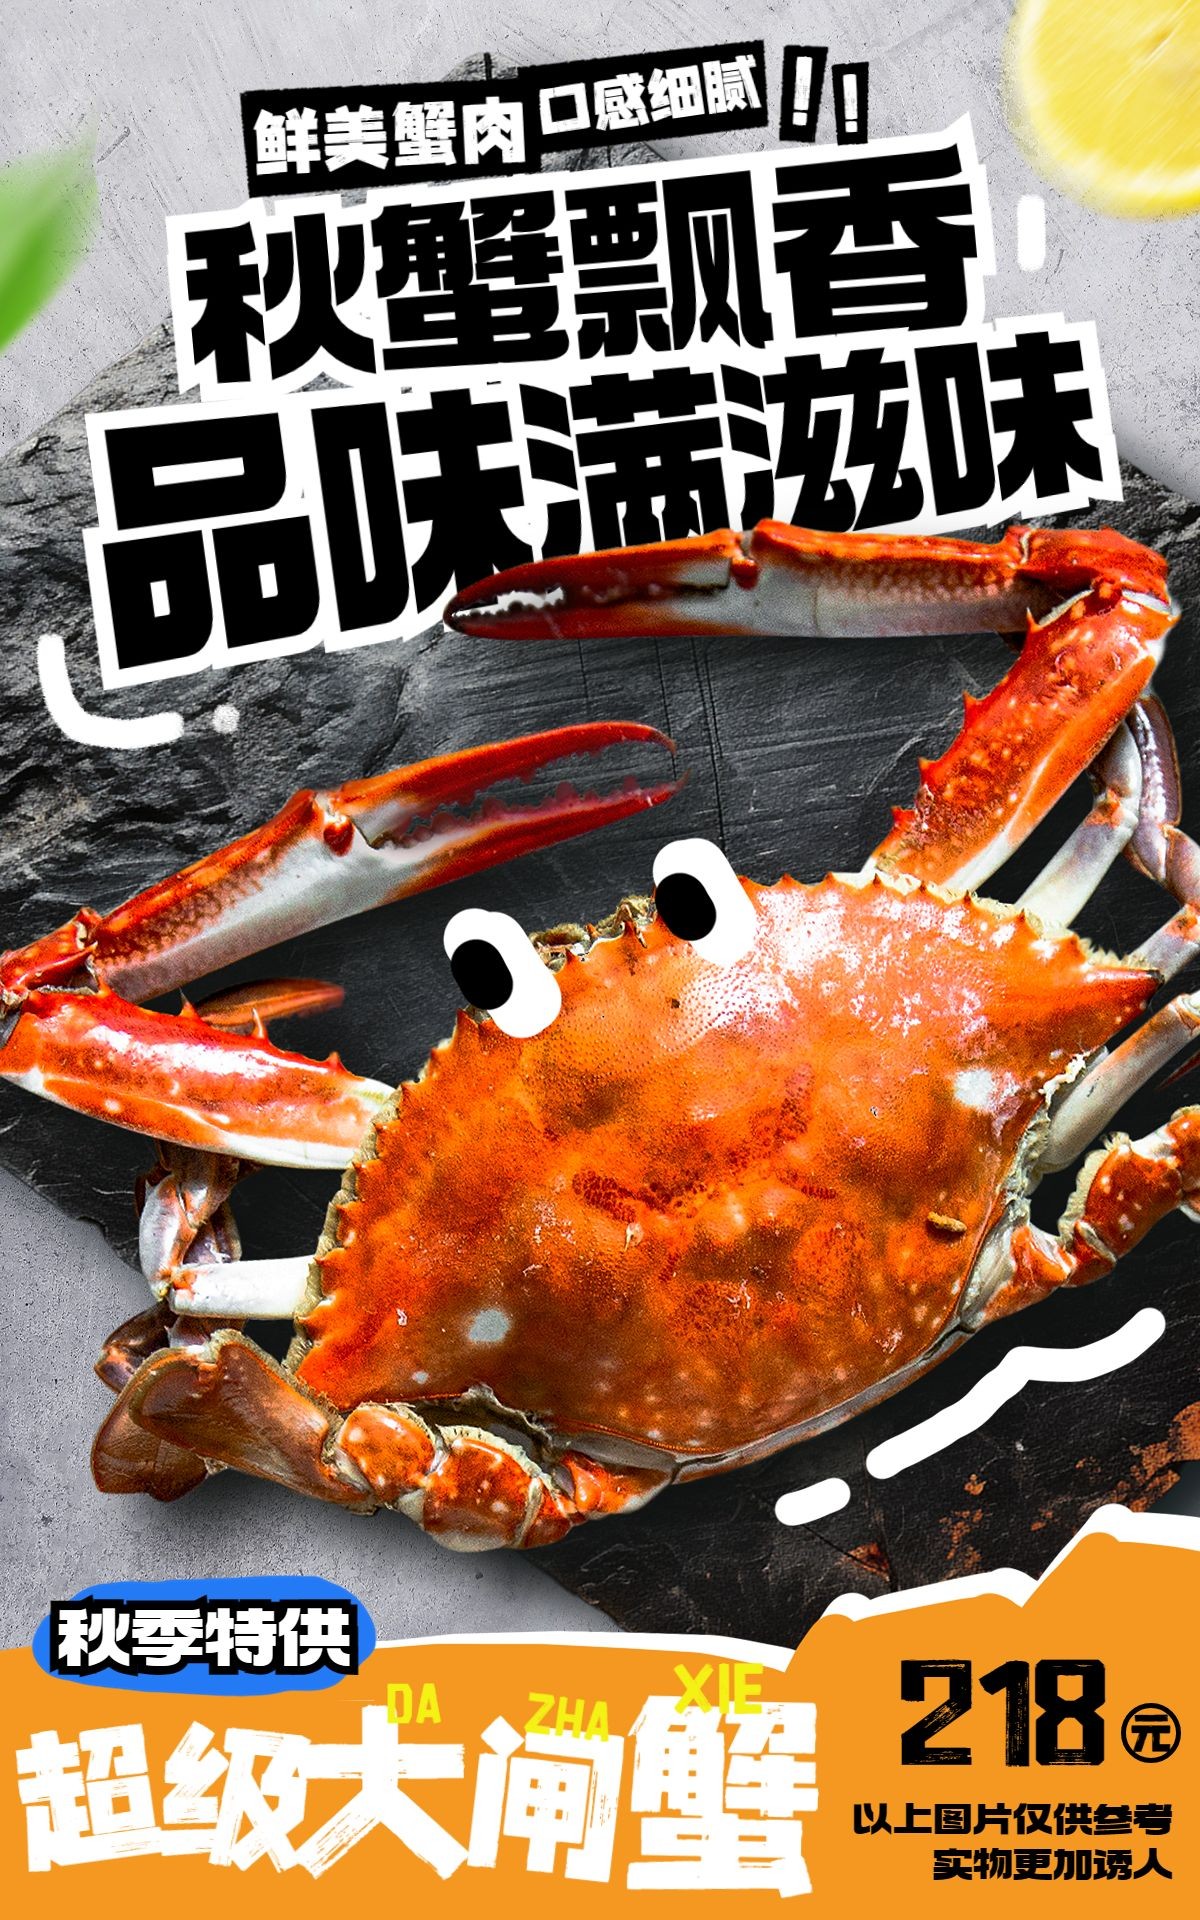 食品生鲜大闸蟹产品营销创意电商竖版海报AIGC预览效果